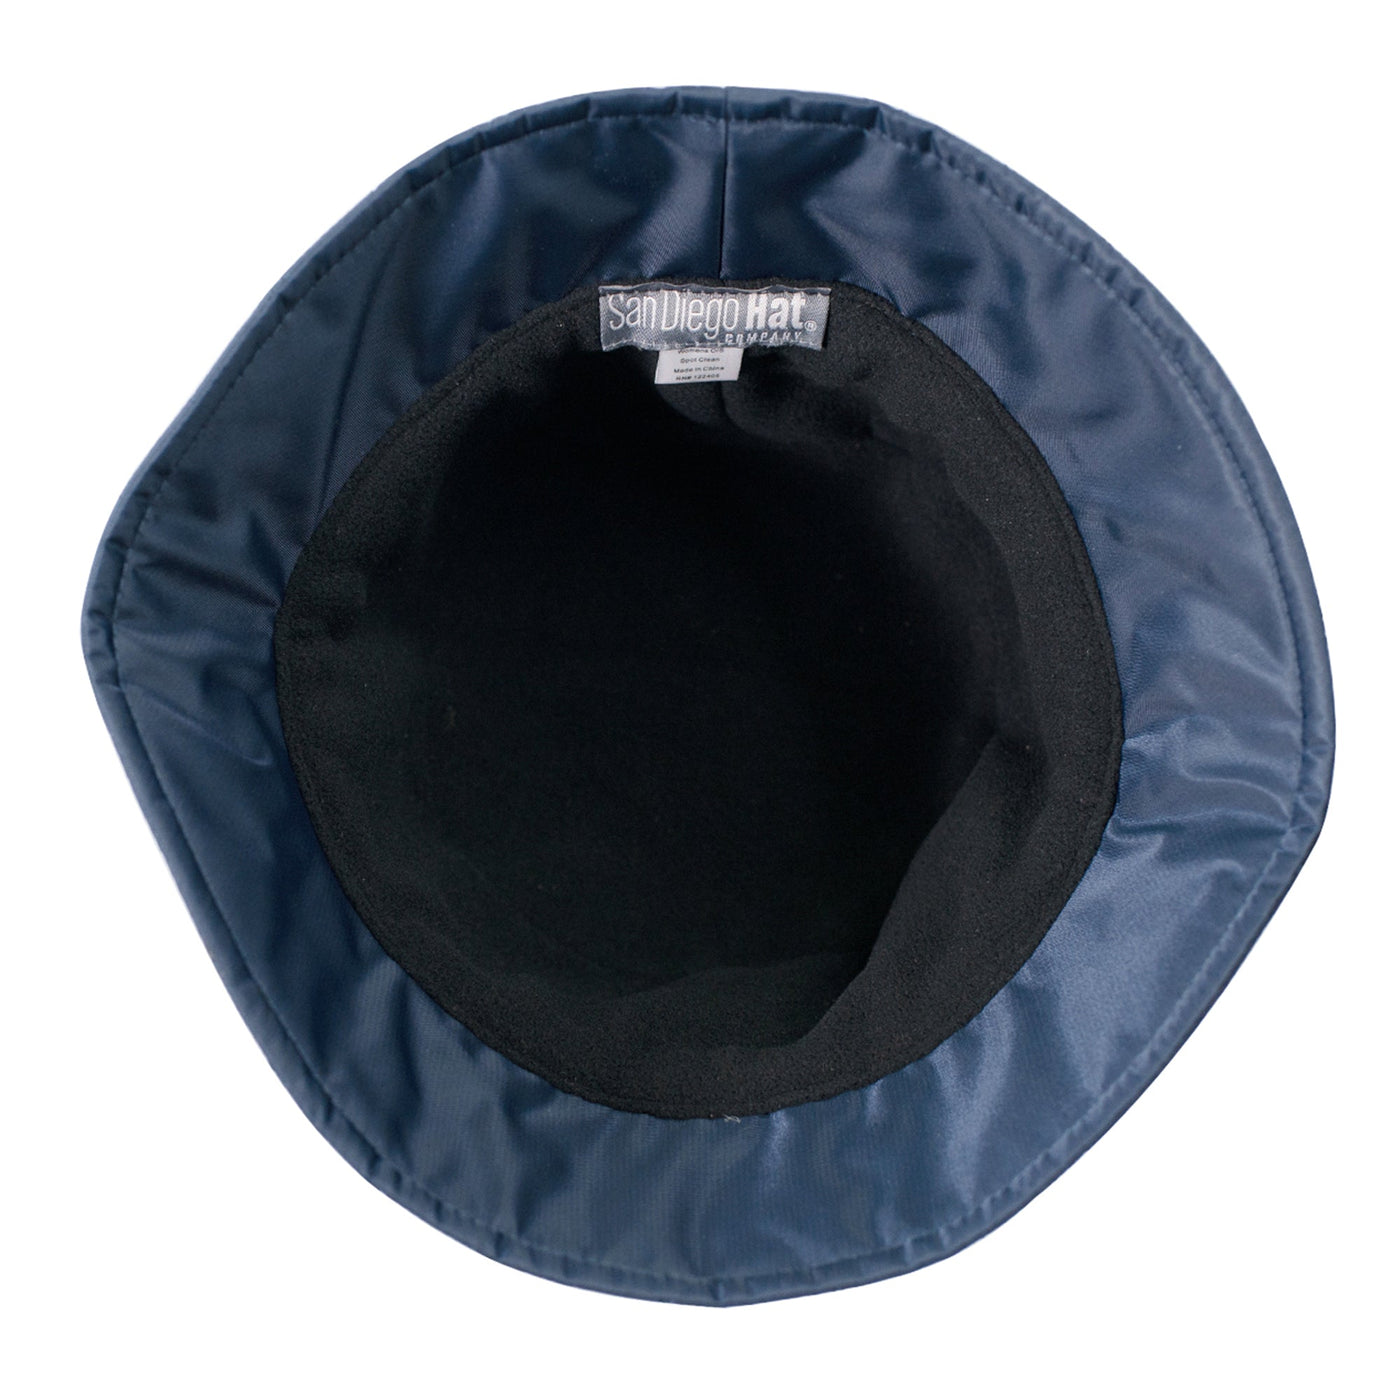 BUCKET - Women's Quilted Bucket Hat